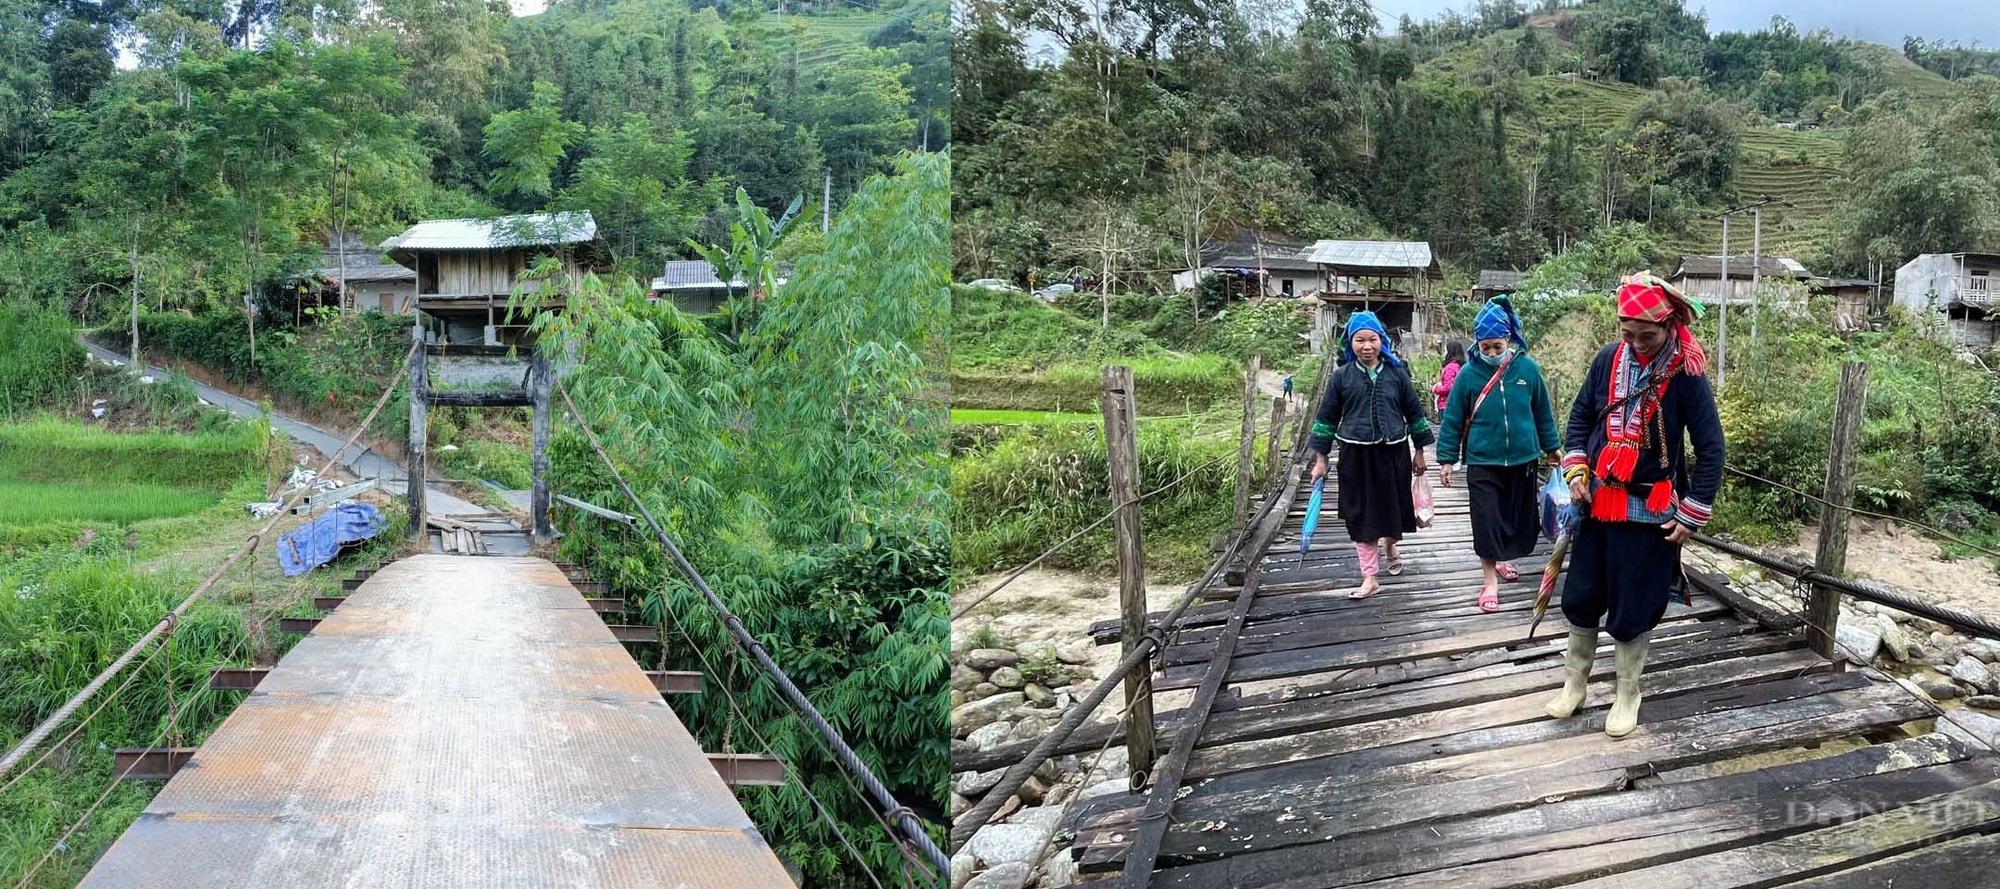 Sửa chữa cây cầu gỗ mục ở Hà Giang: Hoàn thiện phần mặt cầu - Ảnh 2.